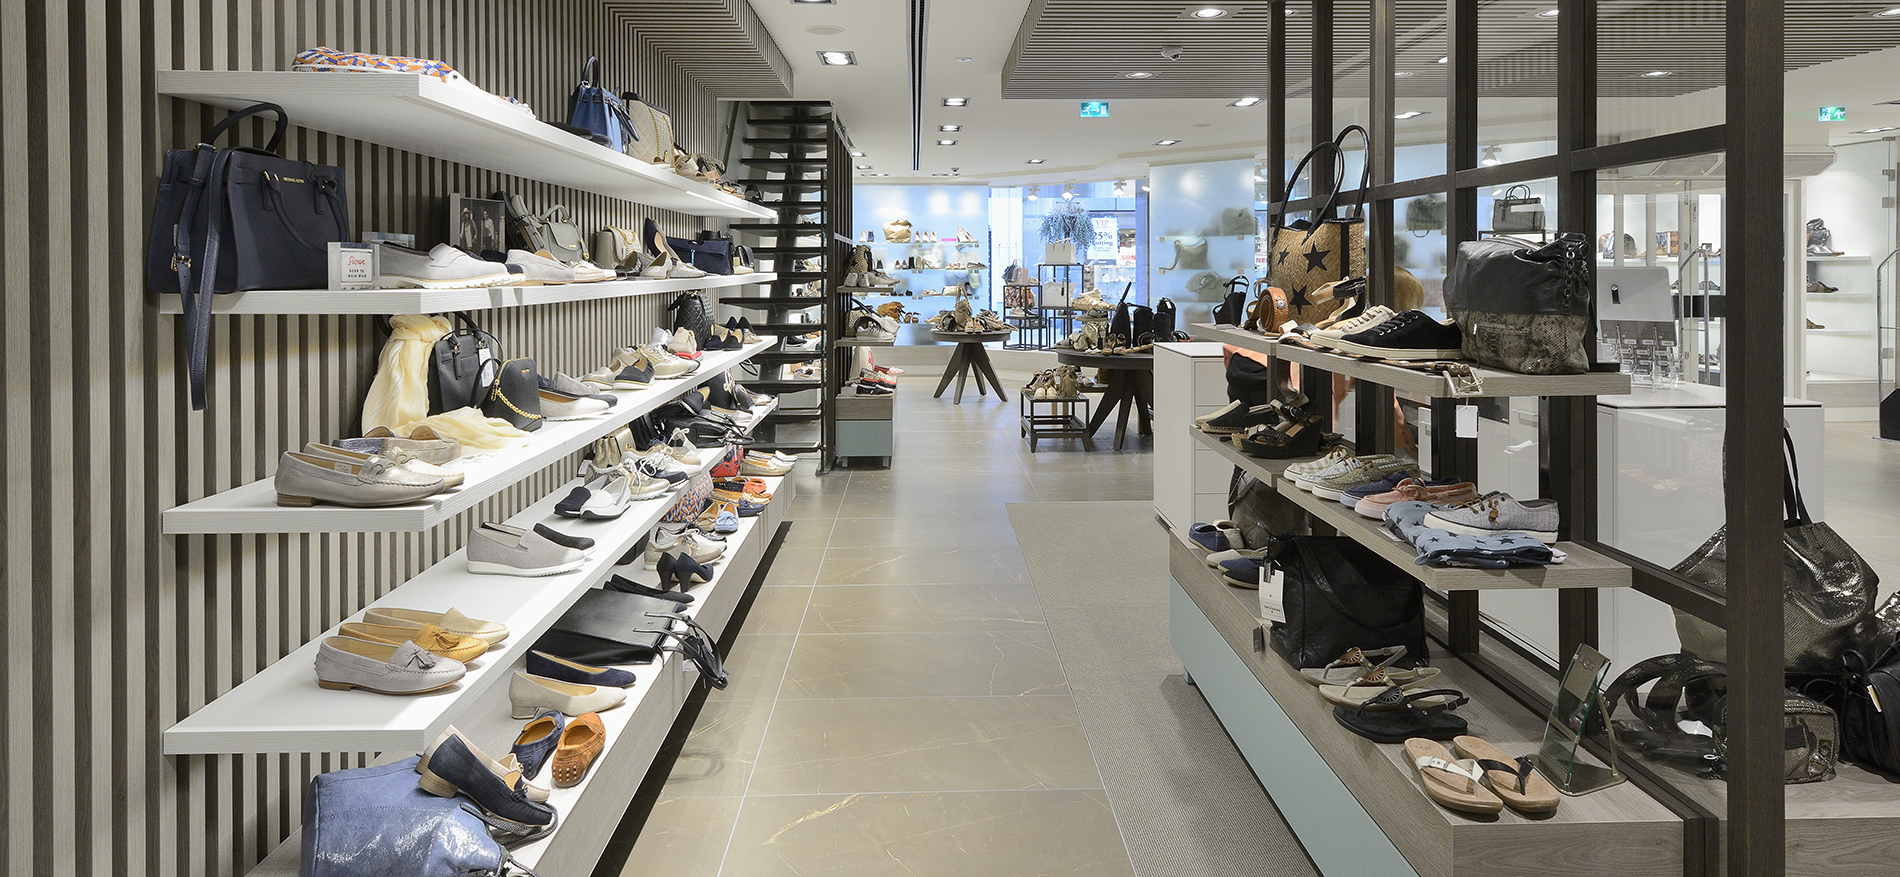 Shuz Wassenaar : Agencement de magasin chaussures - 